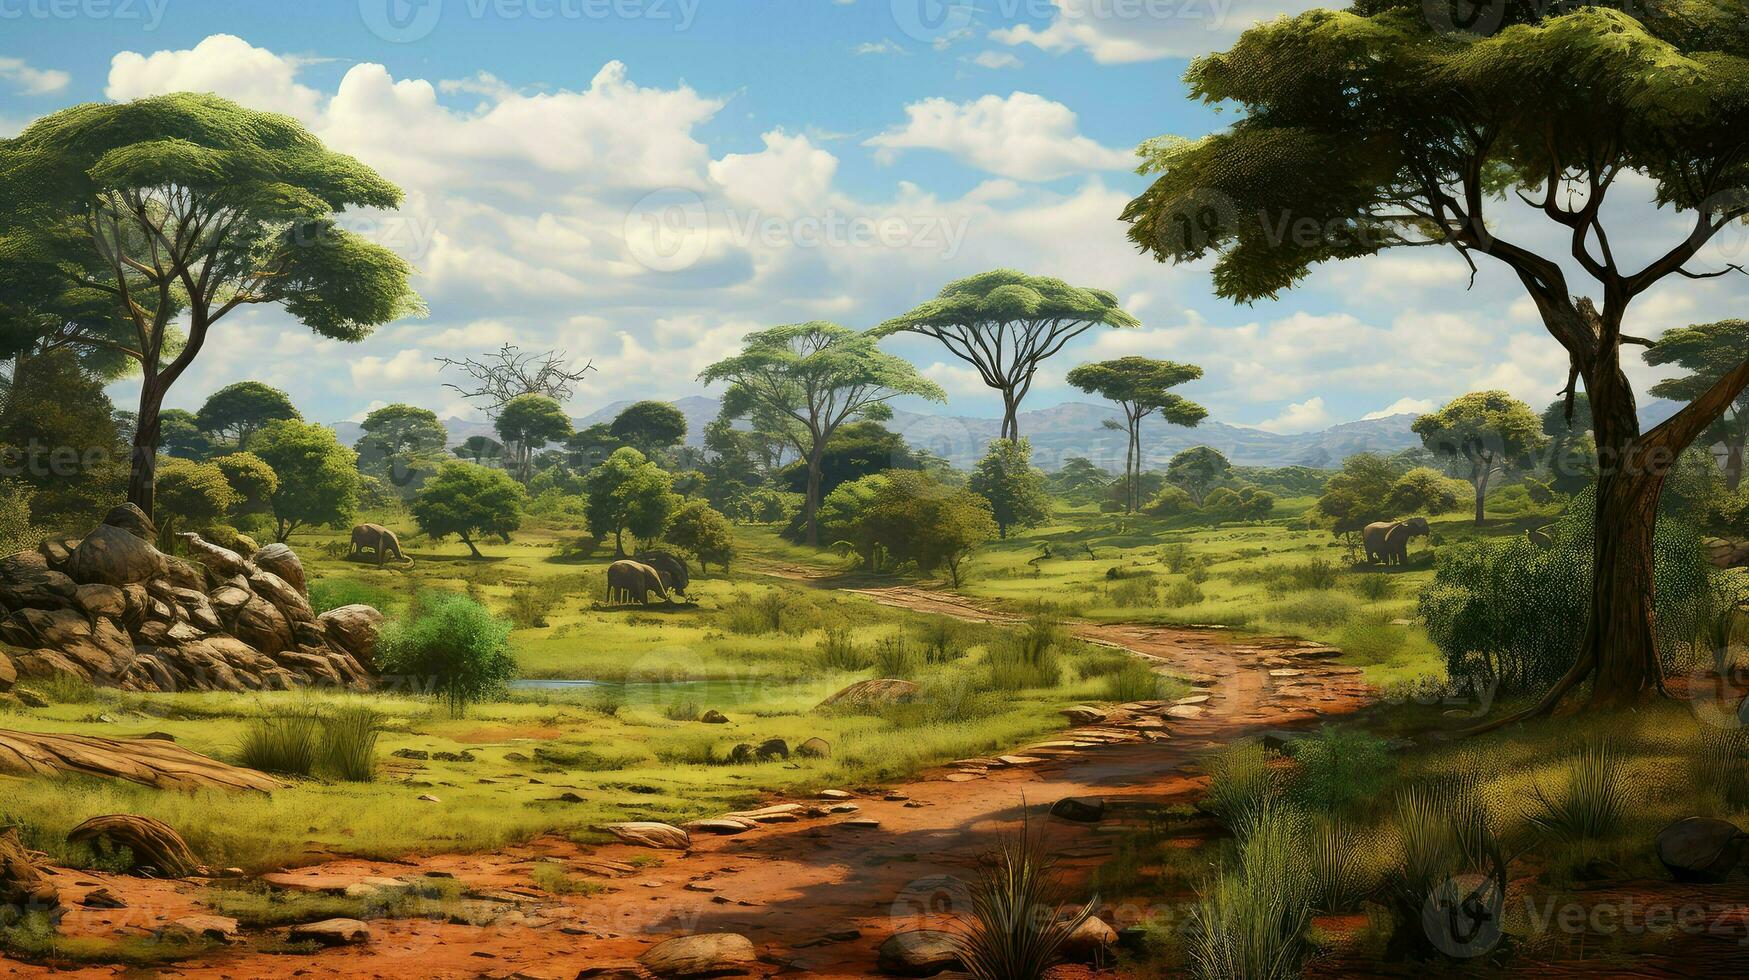 África africano savana bosque ai gerado foto